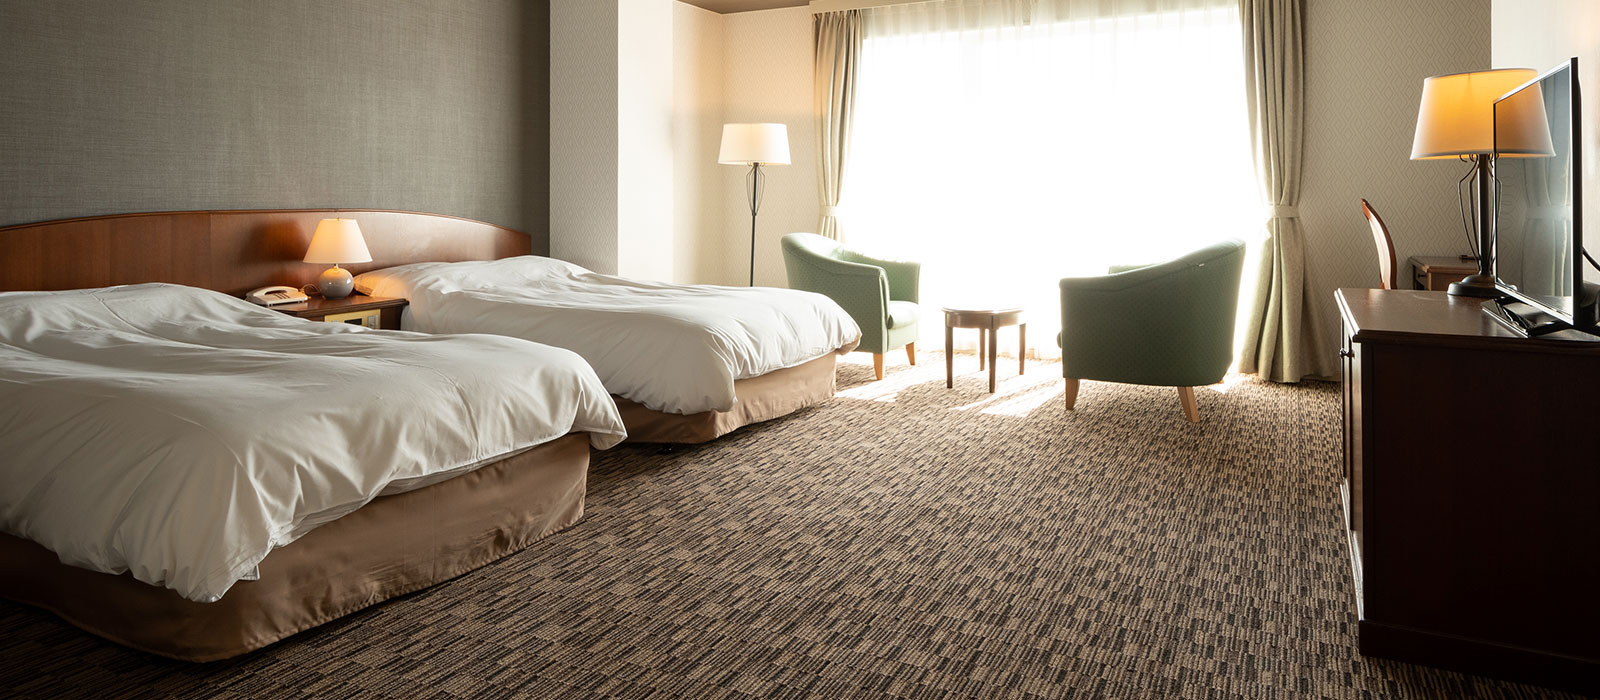 橋立灣飯店 Hashidate bay hotel:guest rooms